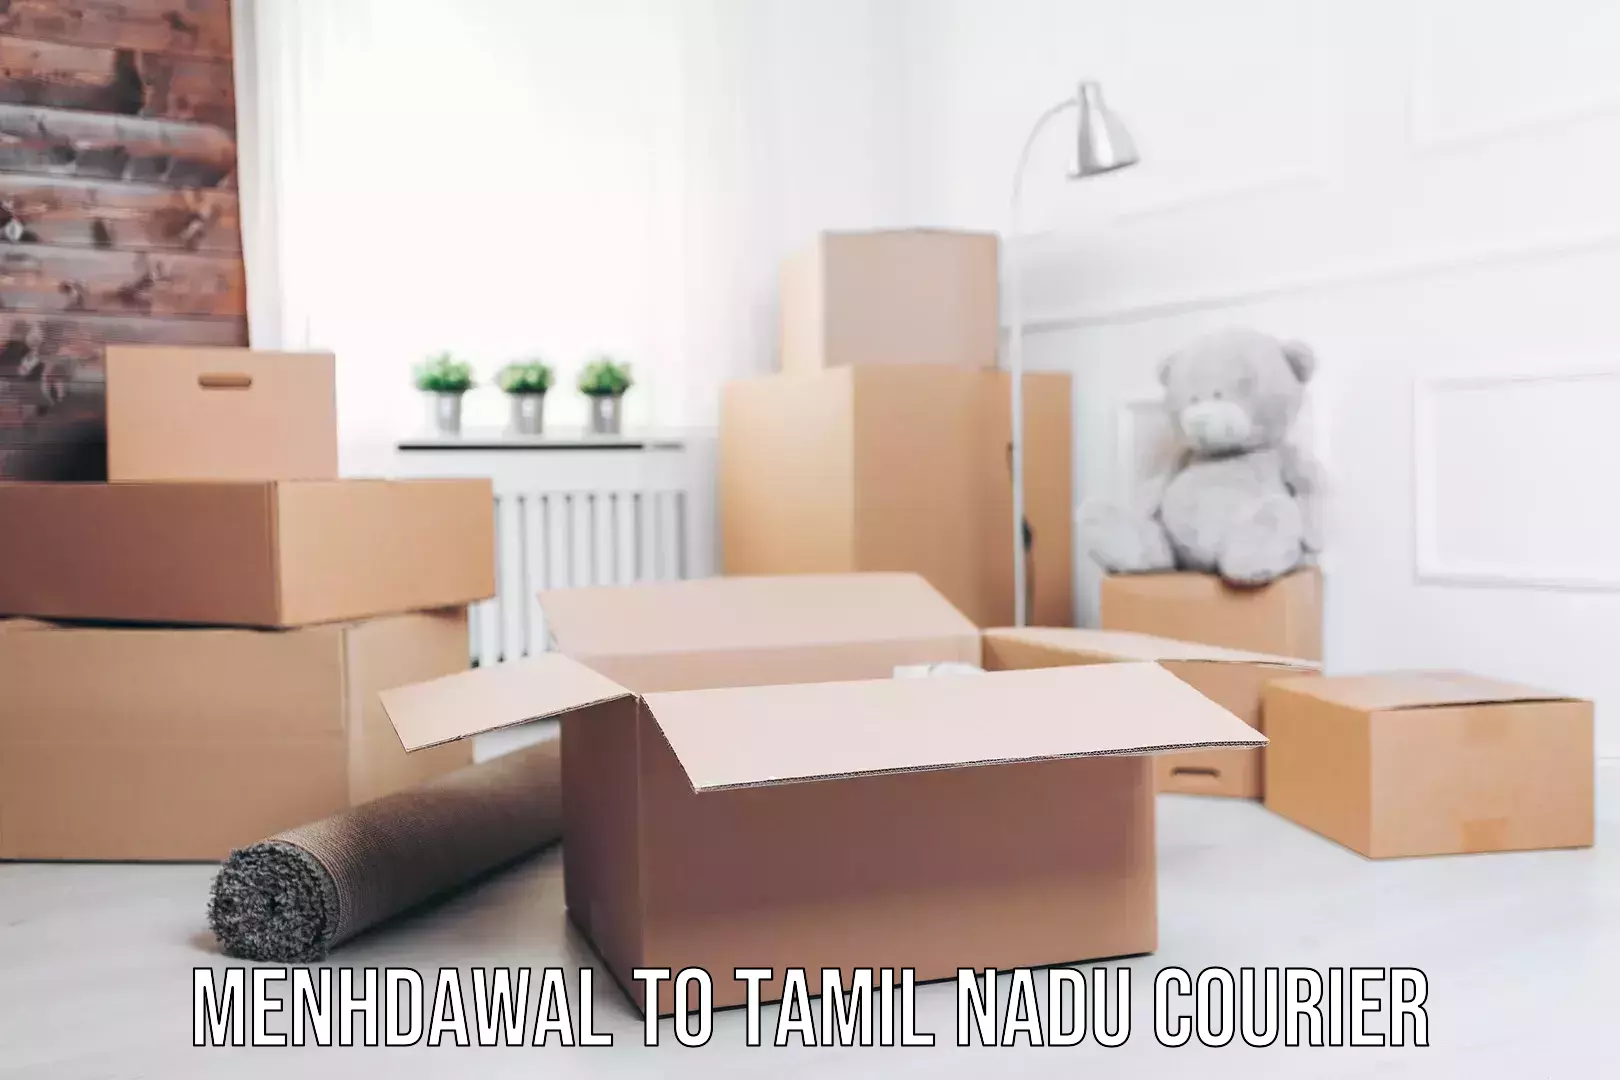 Comprehensive goods transport in Menhdawal to Tamil Nadu